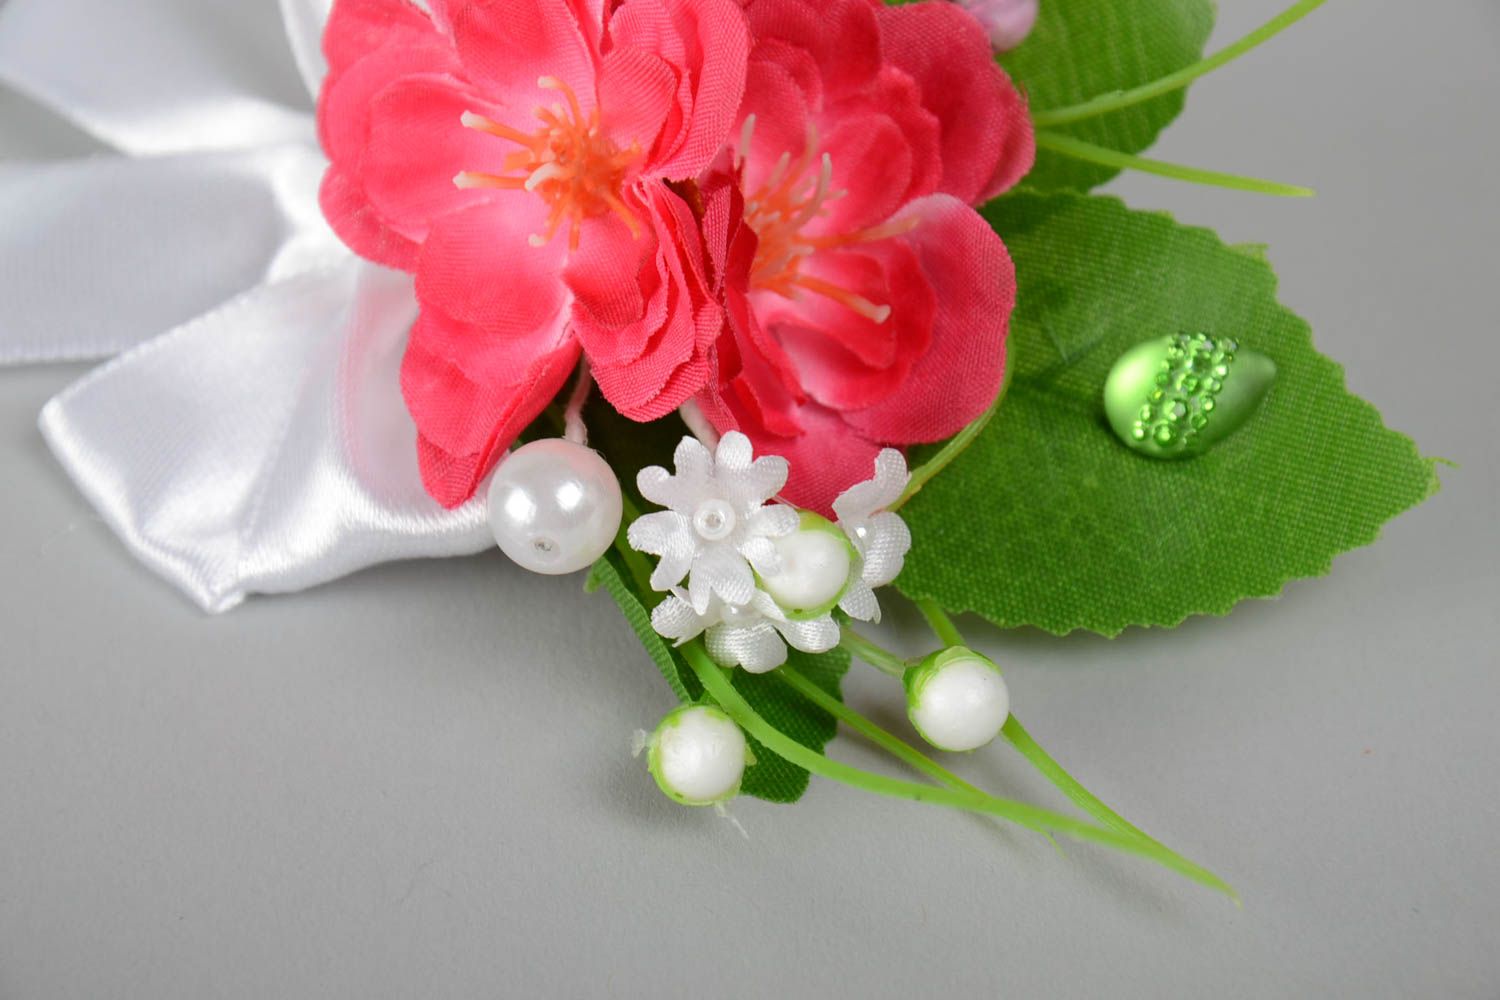 Бутоньерка для гостей свидетелей или молодоженов с цветком красивая хэнд мейд фото 4